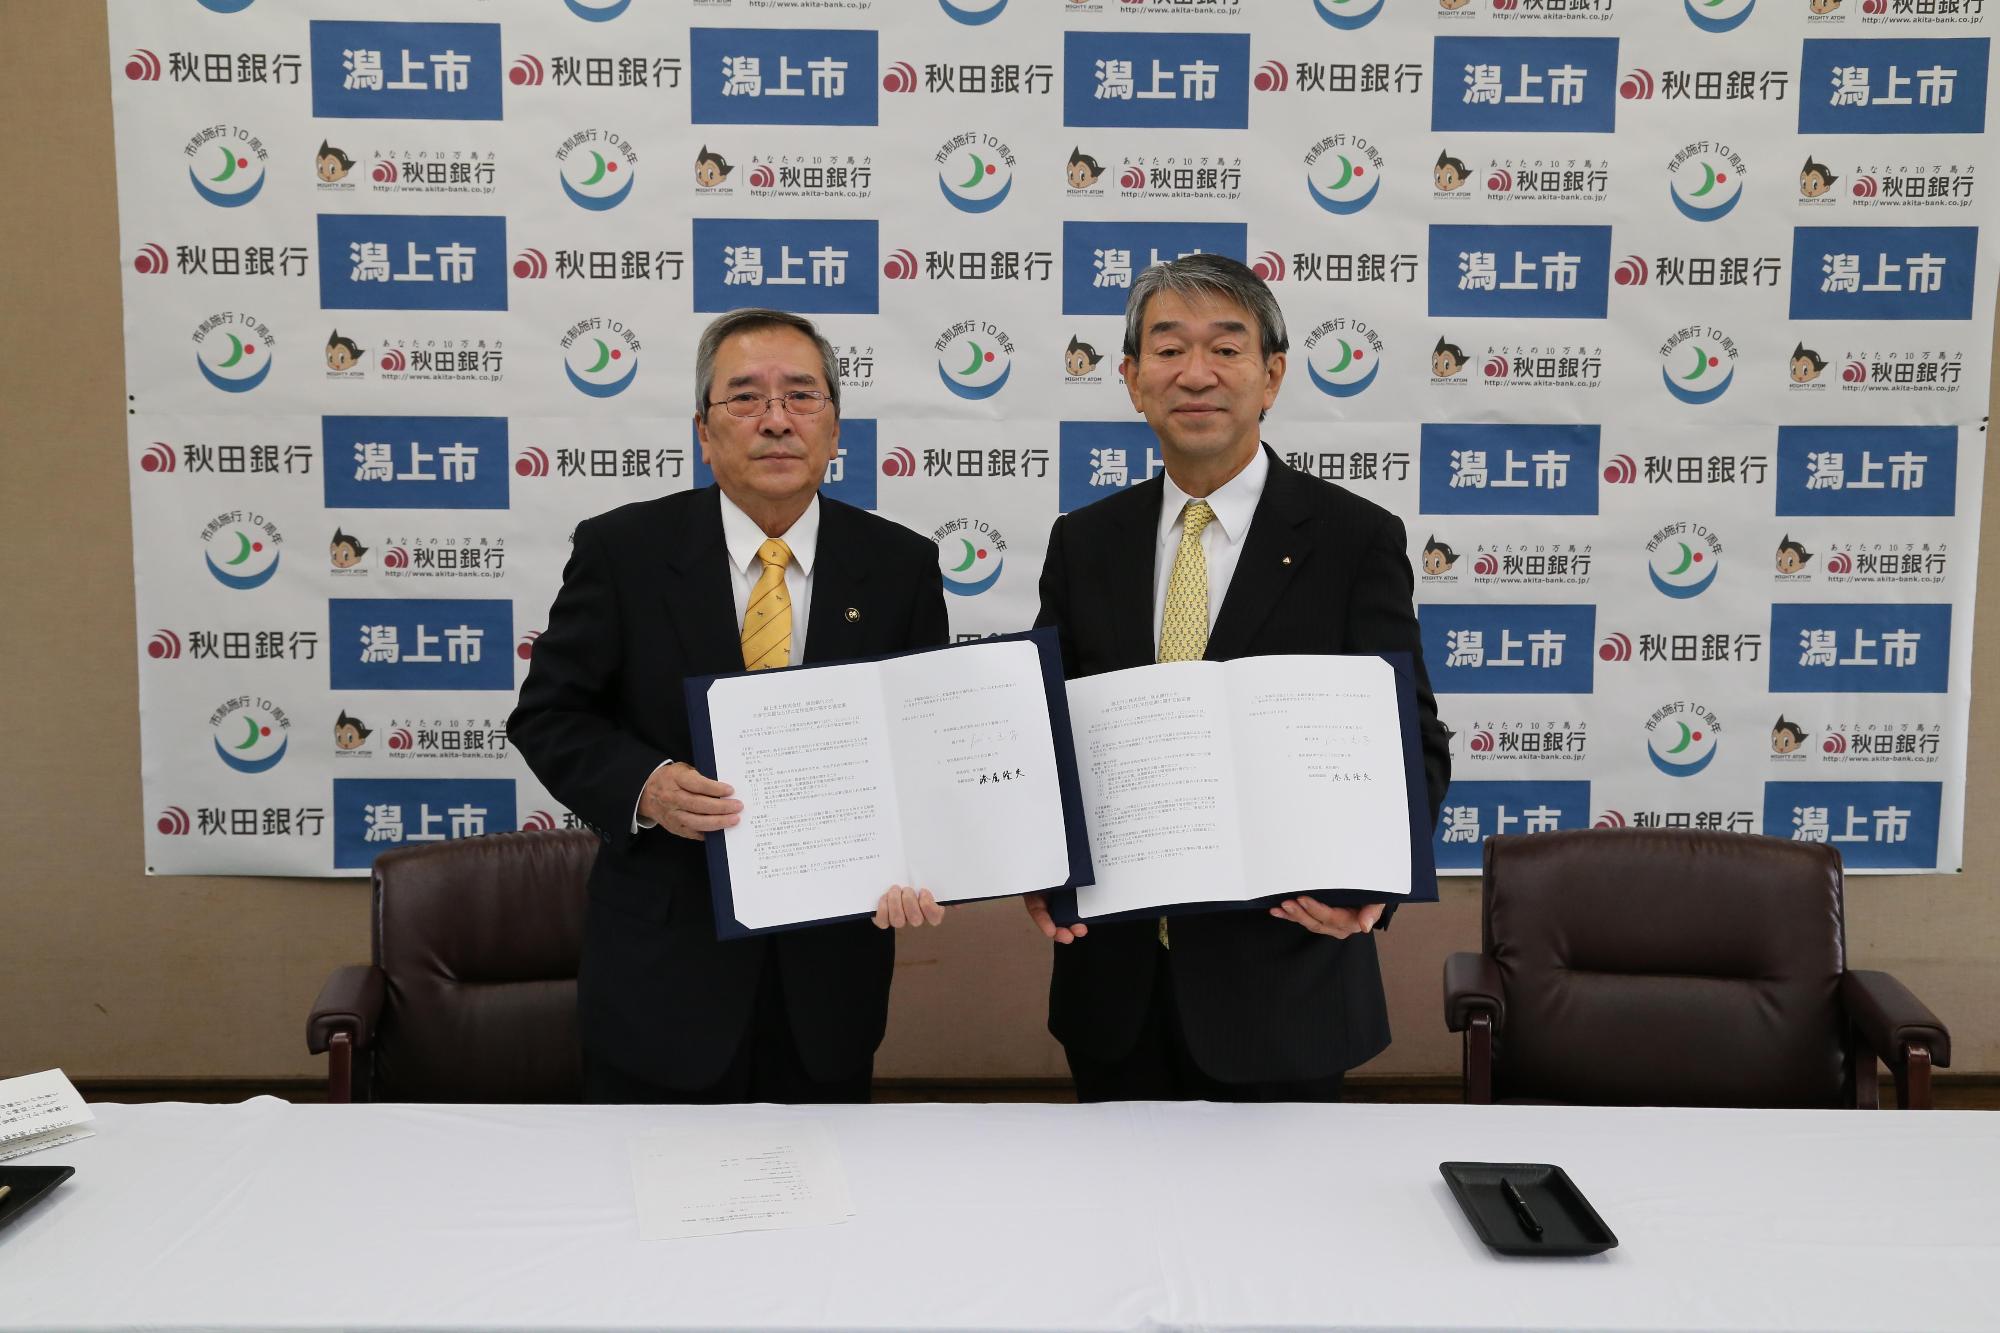 潟上市と秋田銀行と書かれた壁紙の前でスーツを着た二人の男性が両手に協定書を持っている写真